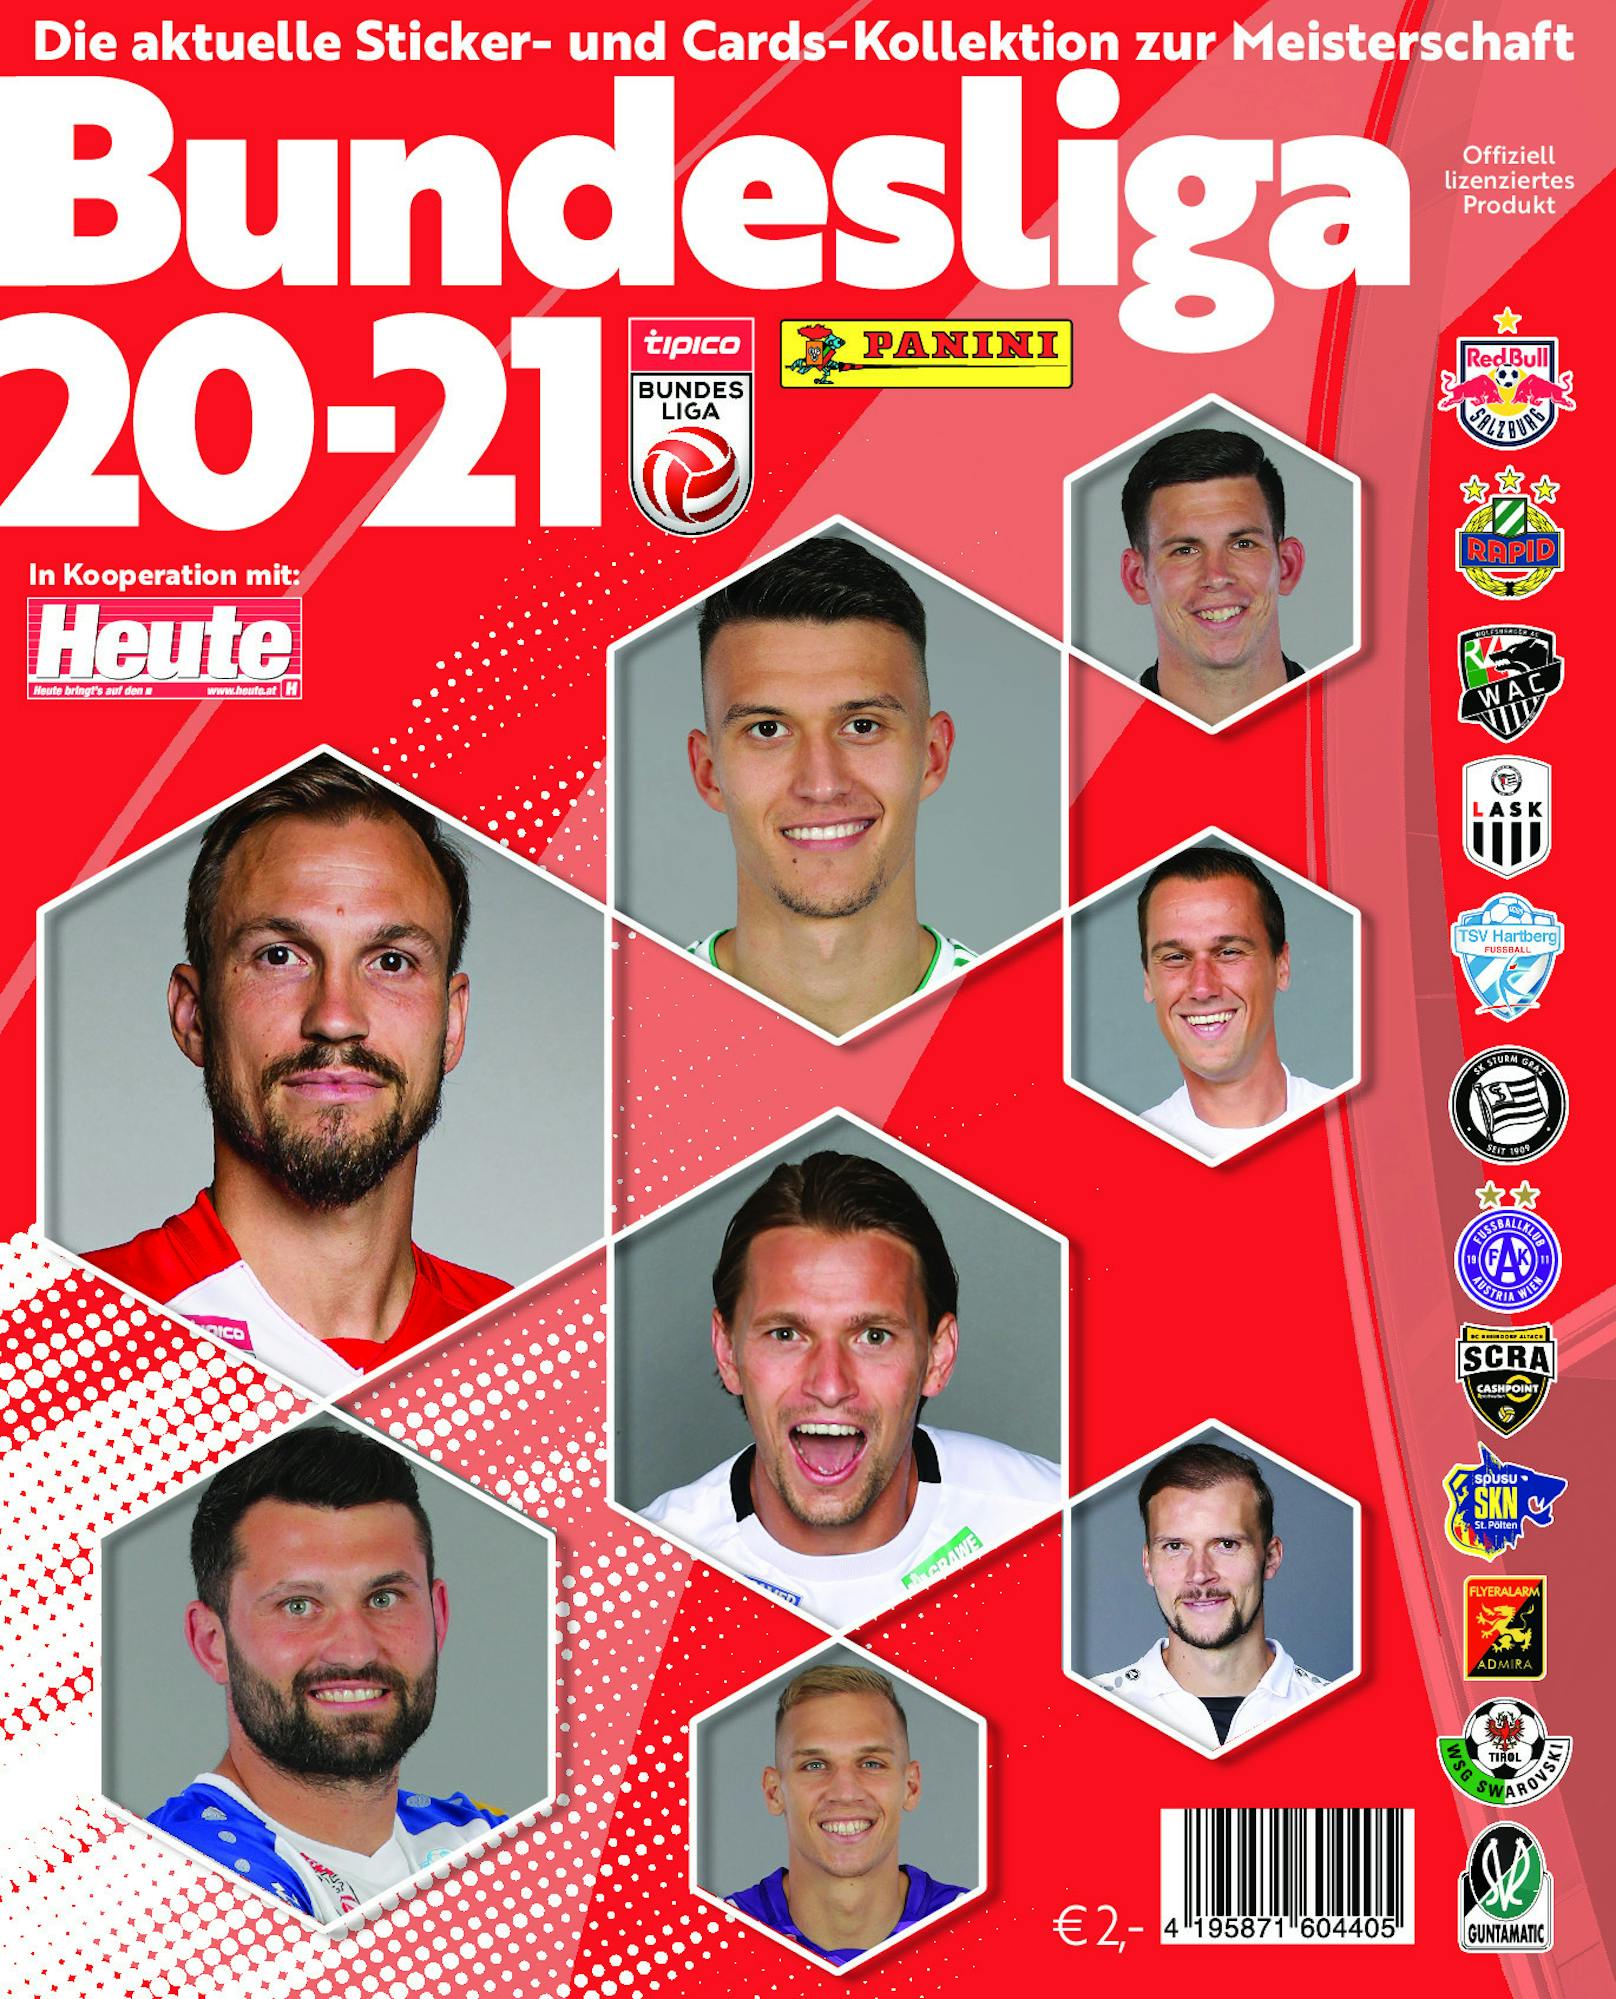 Stickeralbumcover zur Österreichischen Fußball-Bundesliga 20-21